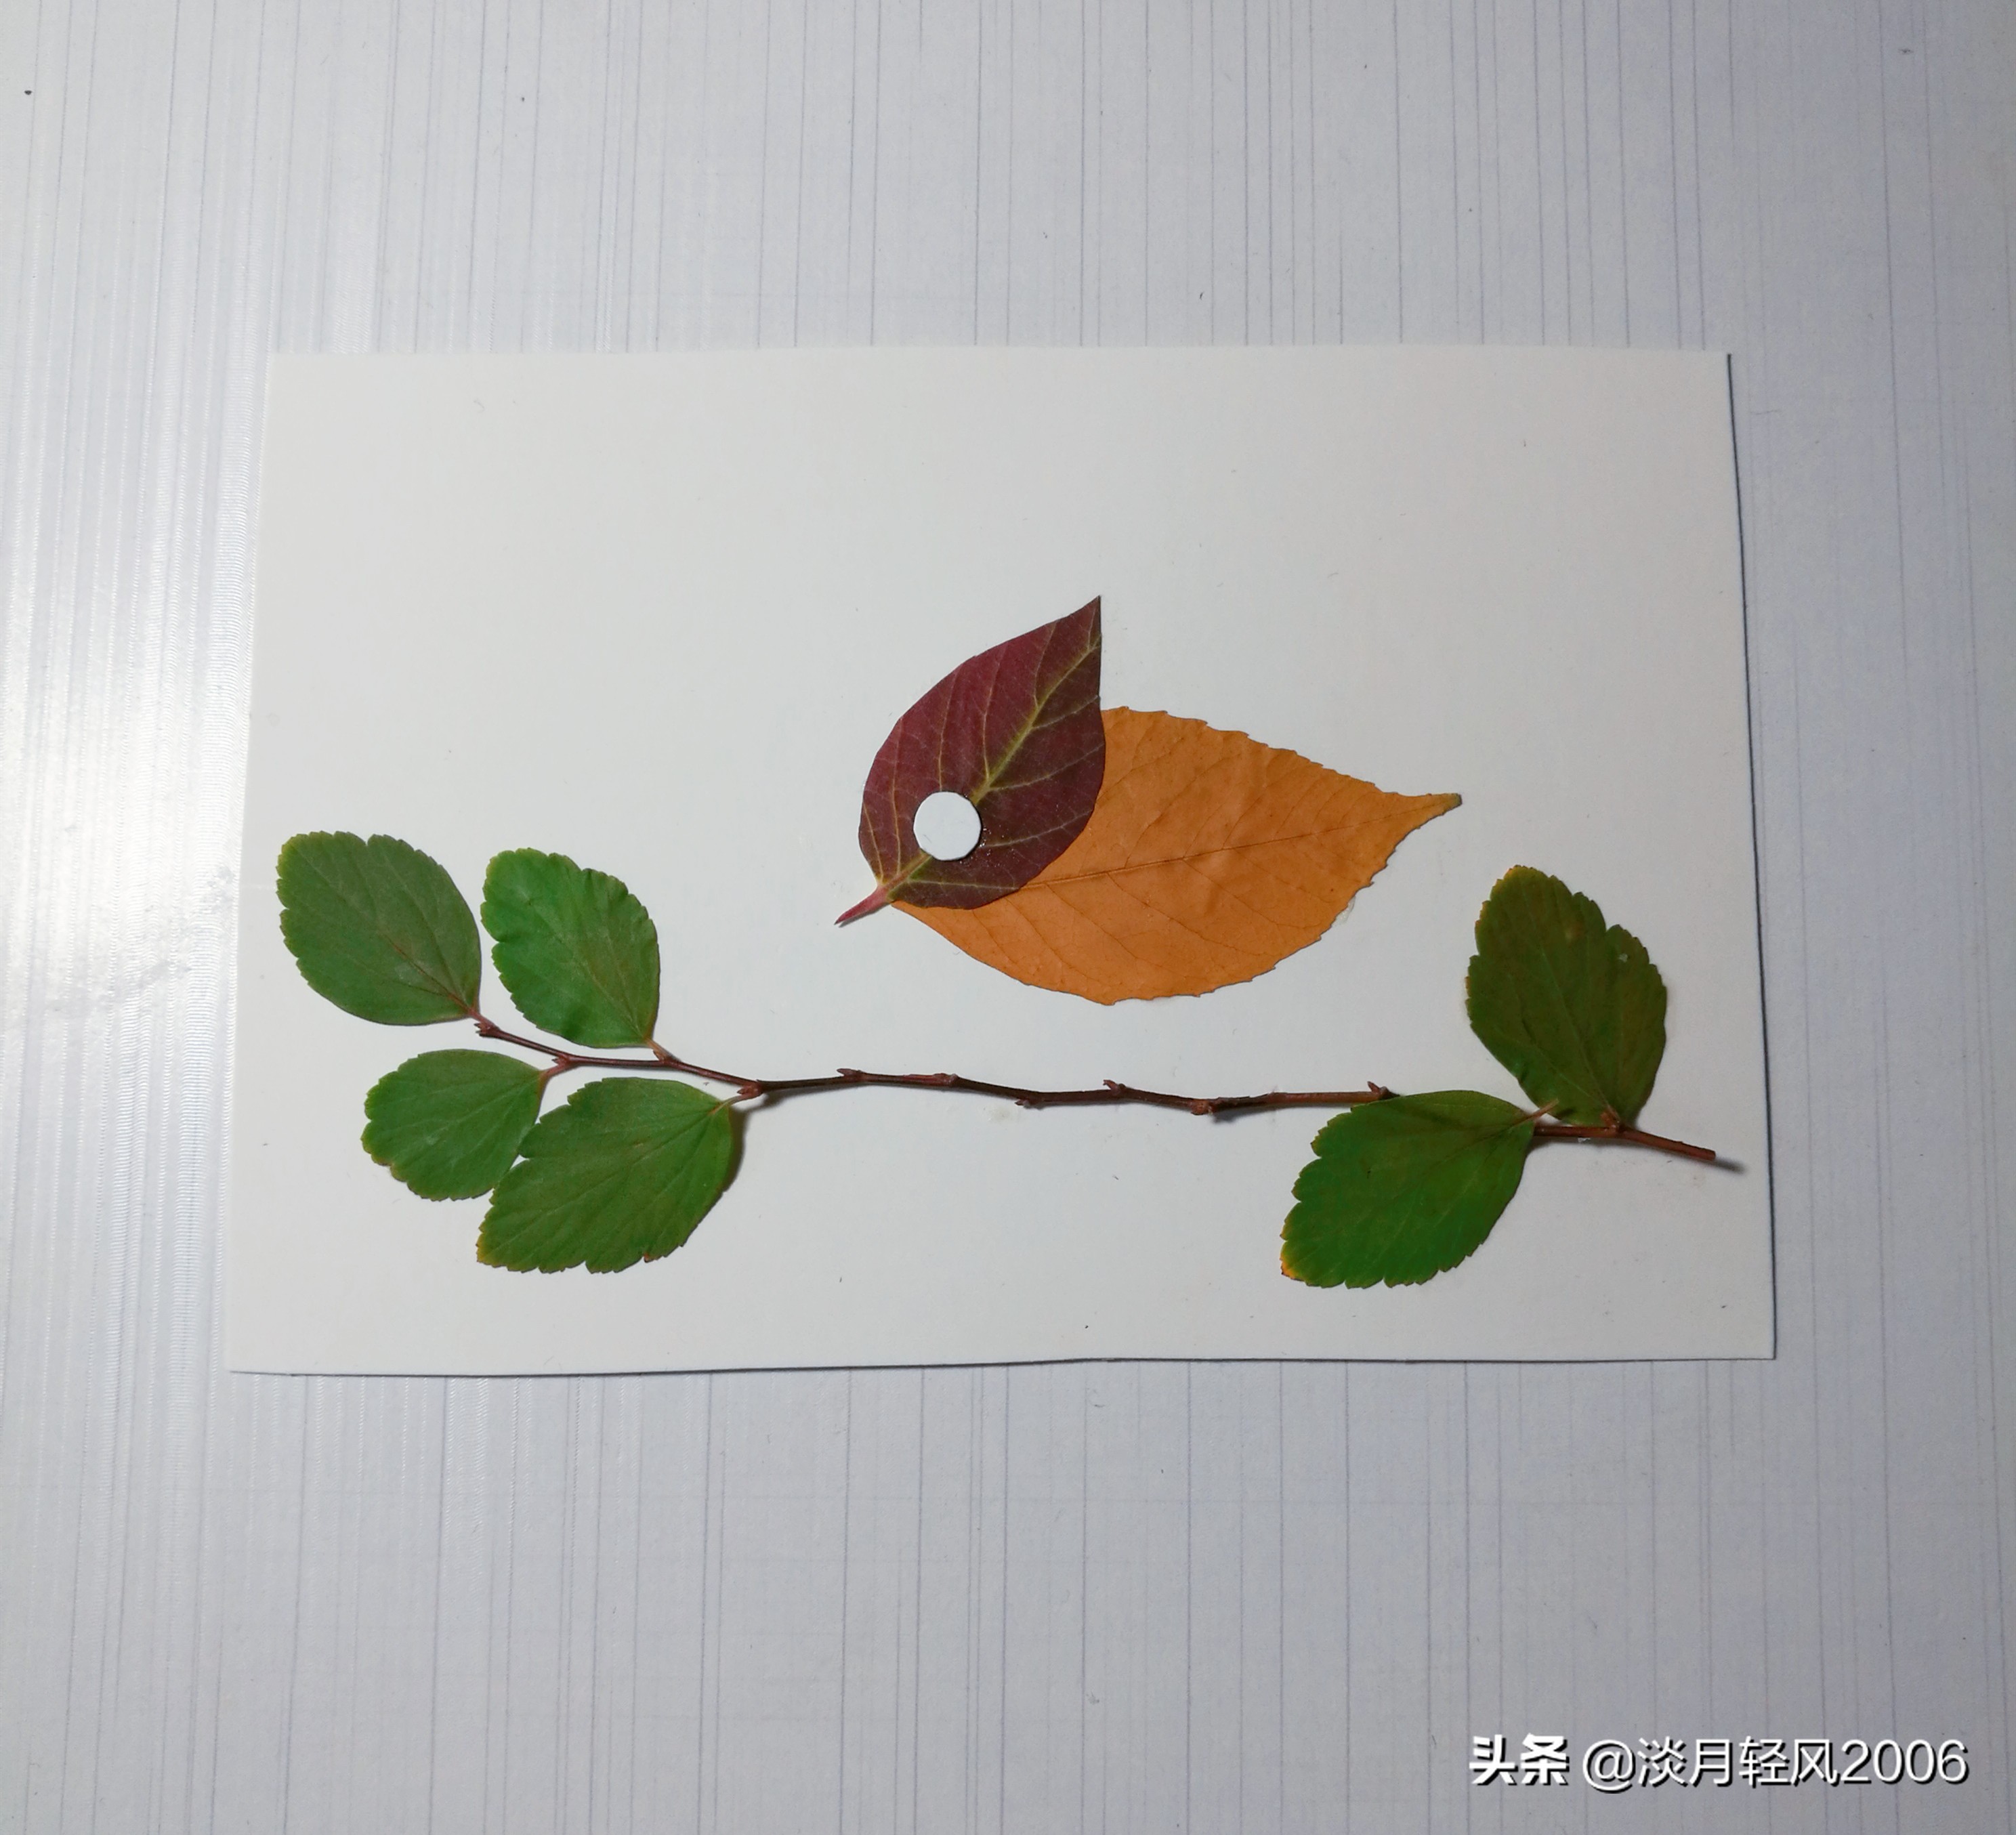 用树叶做的手工贴画简单可爱的叶贴小鸟教程